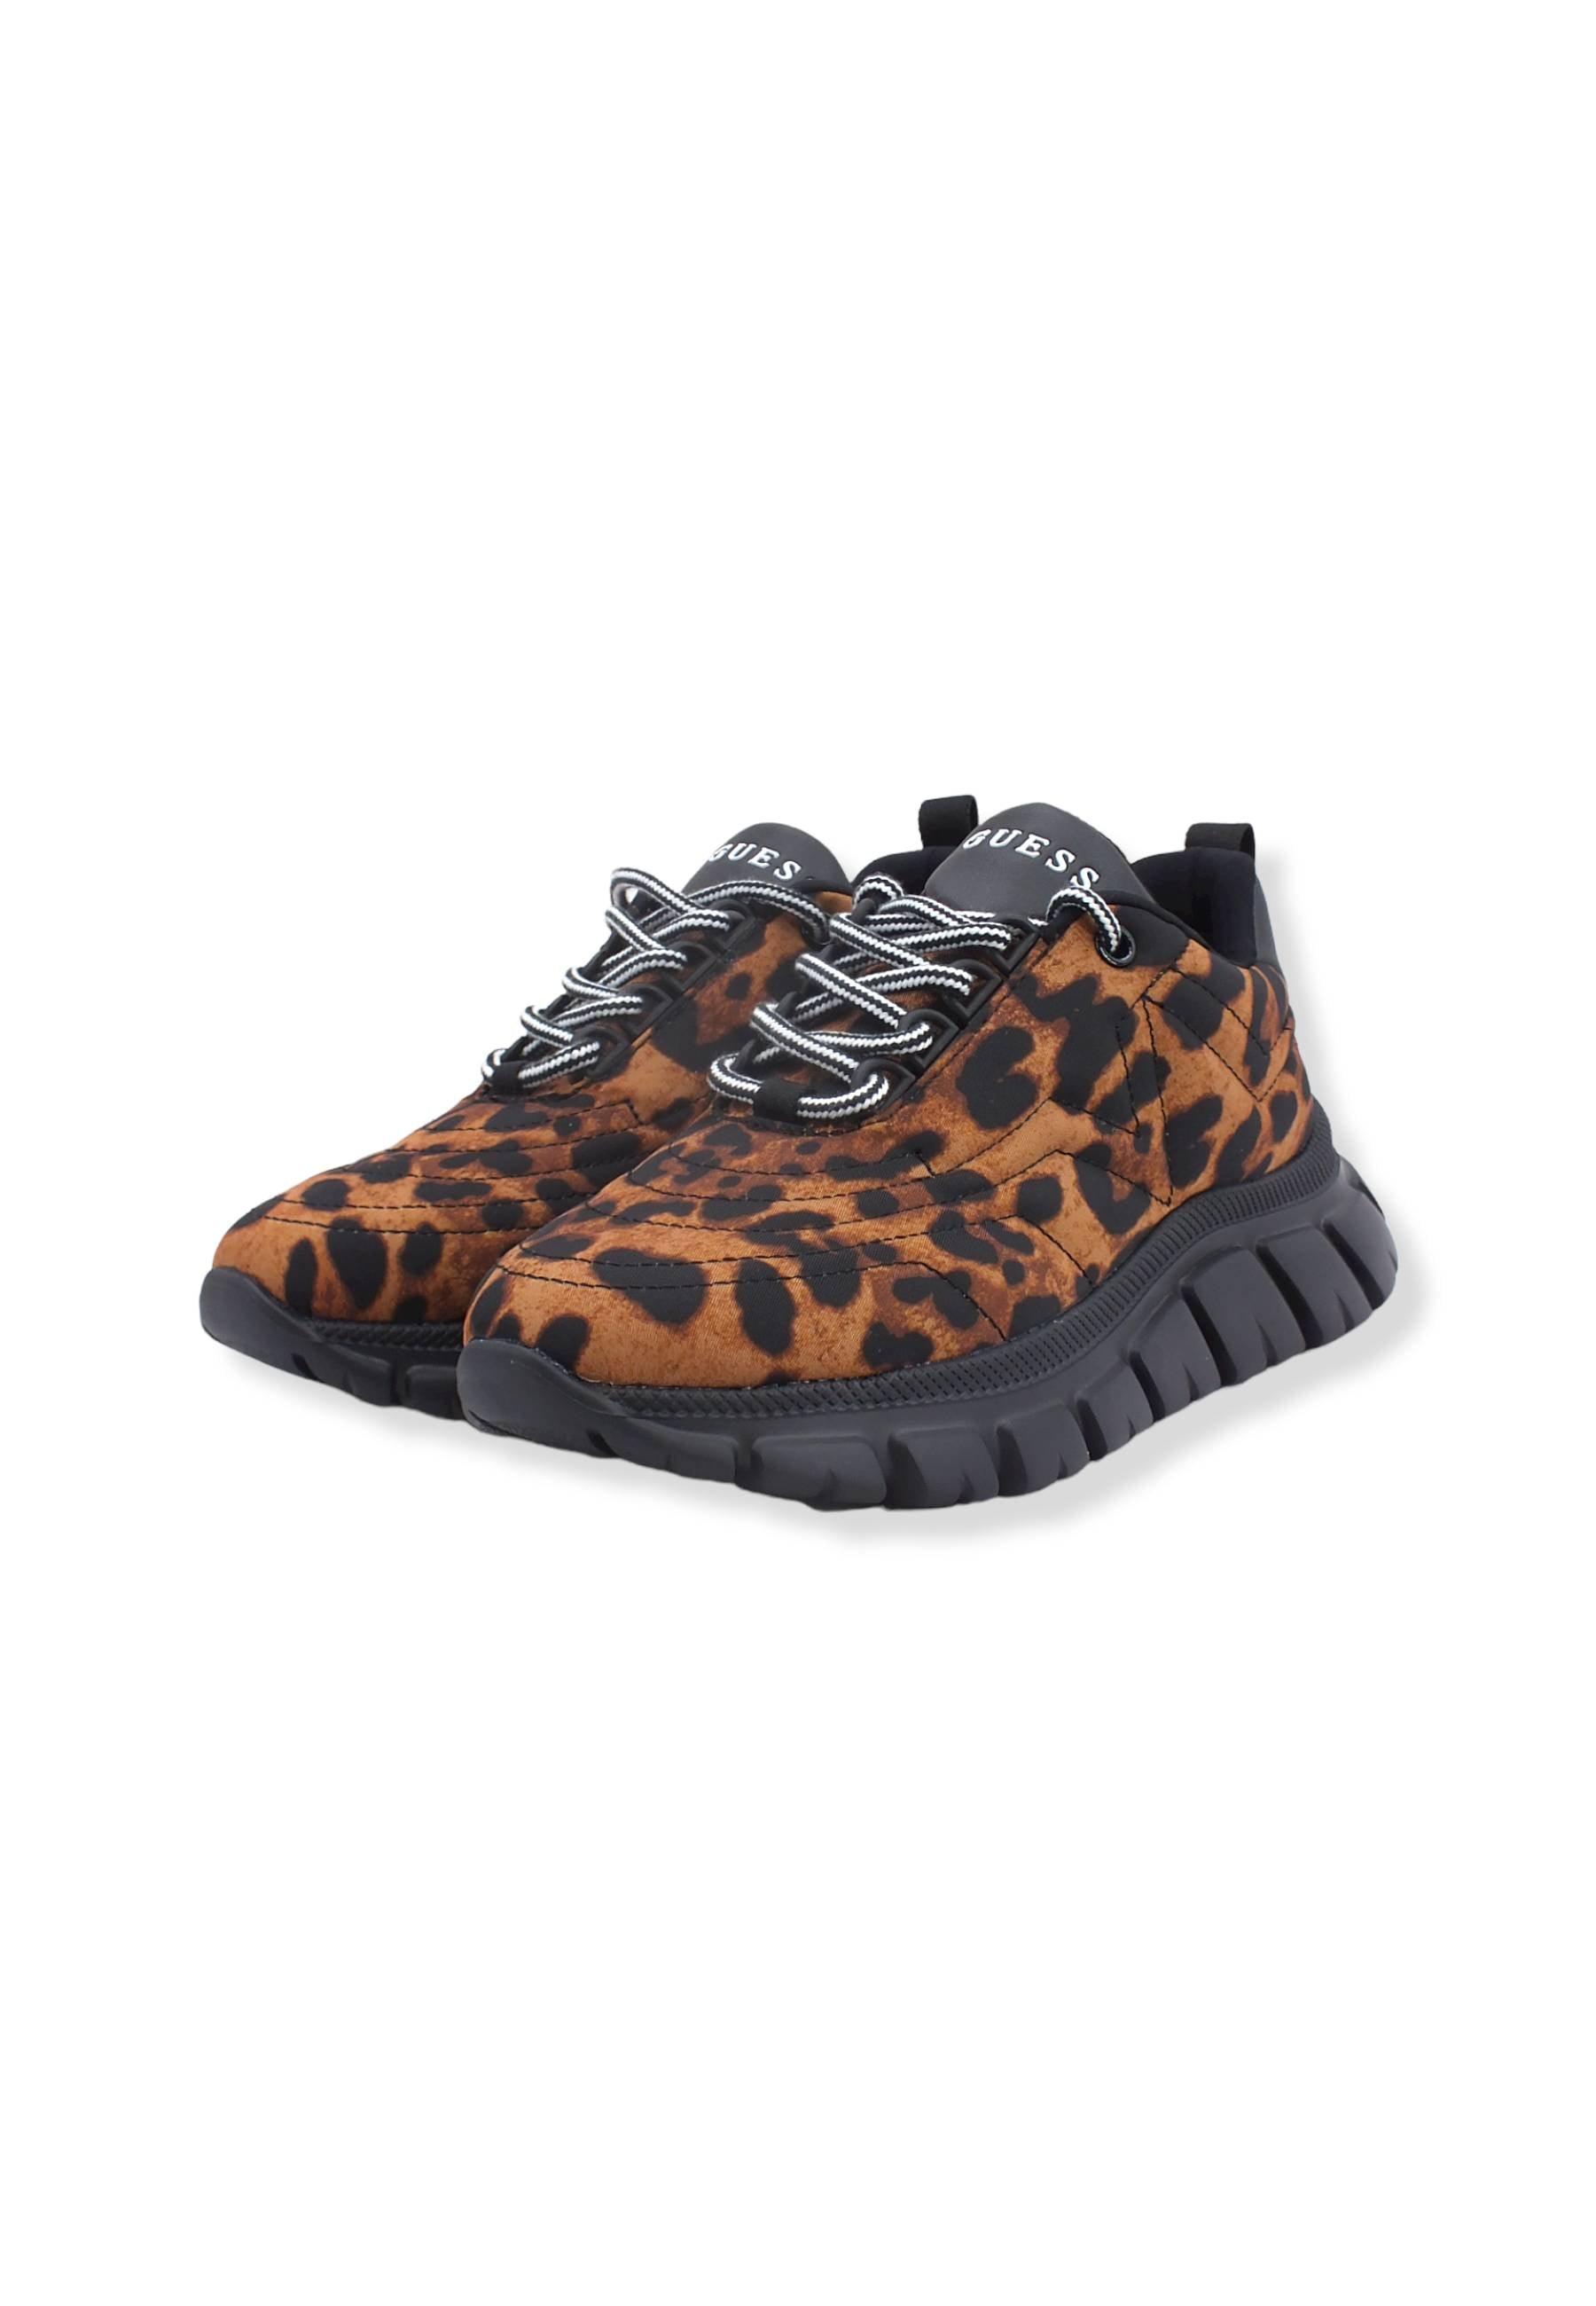 GUESS Sneaker Donna Animalier Leopard FL7C2HPEL12 - Sandrini Calzature e Abbigliamento